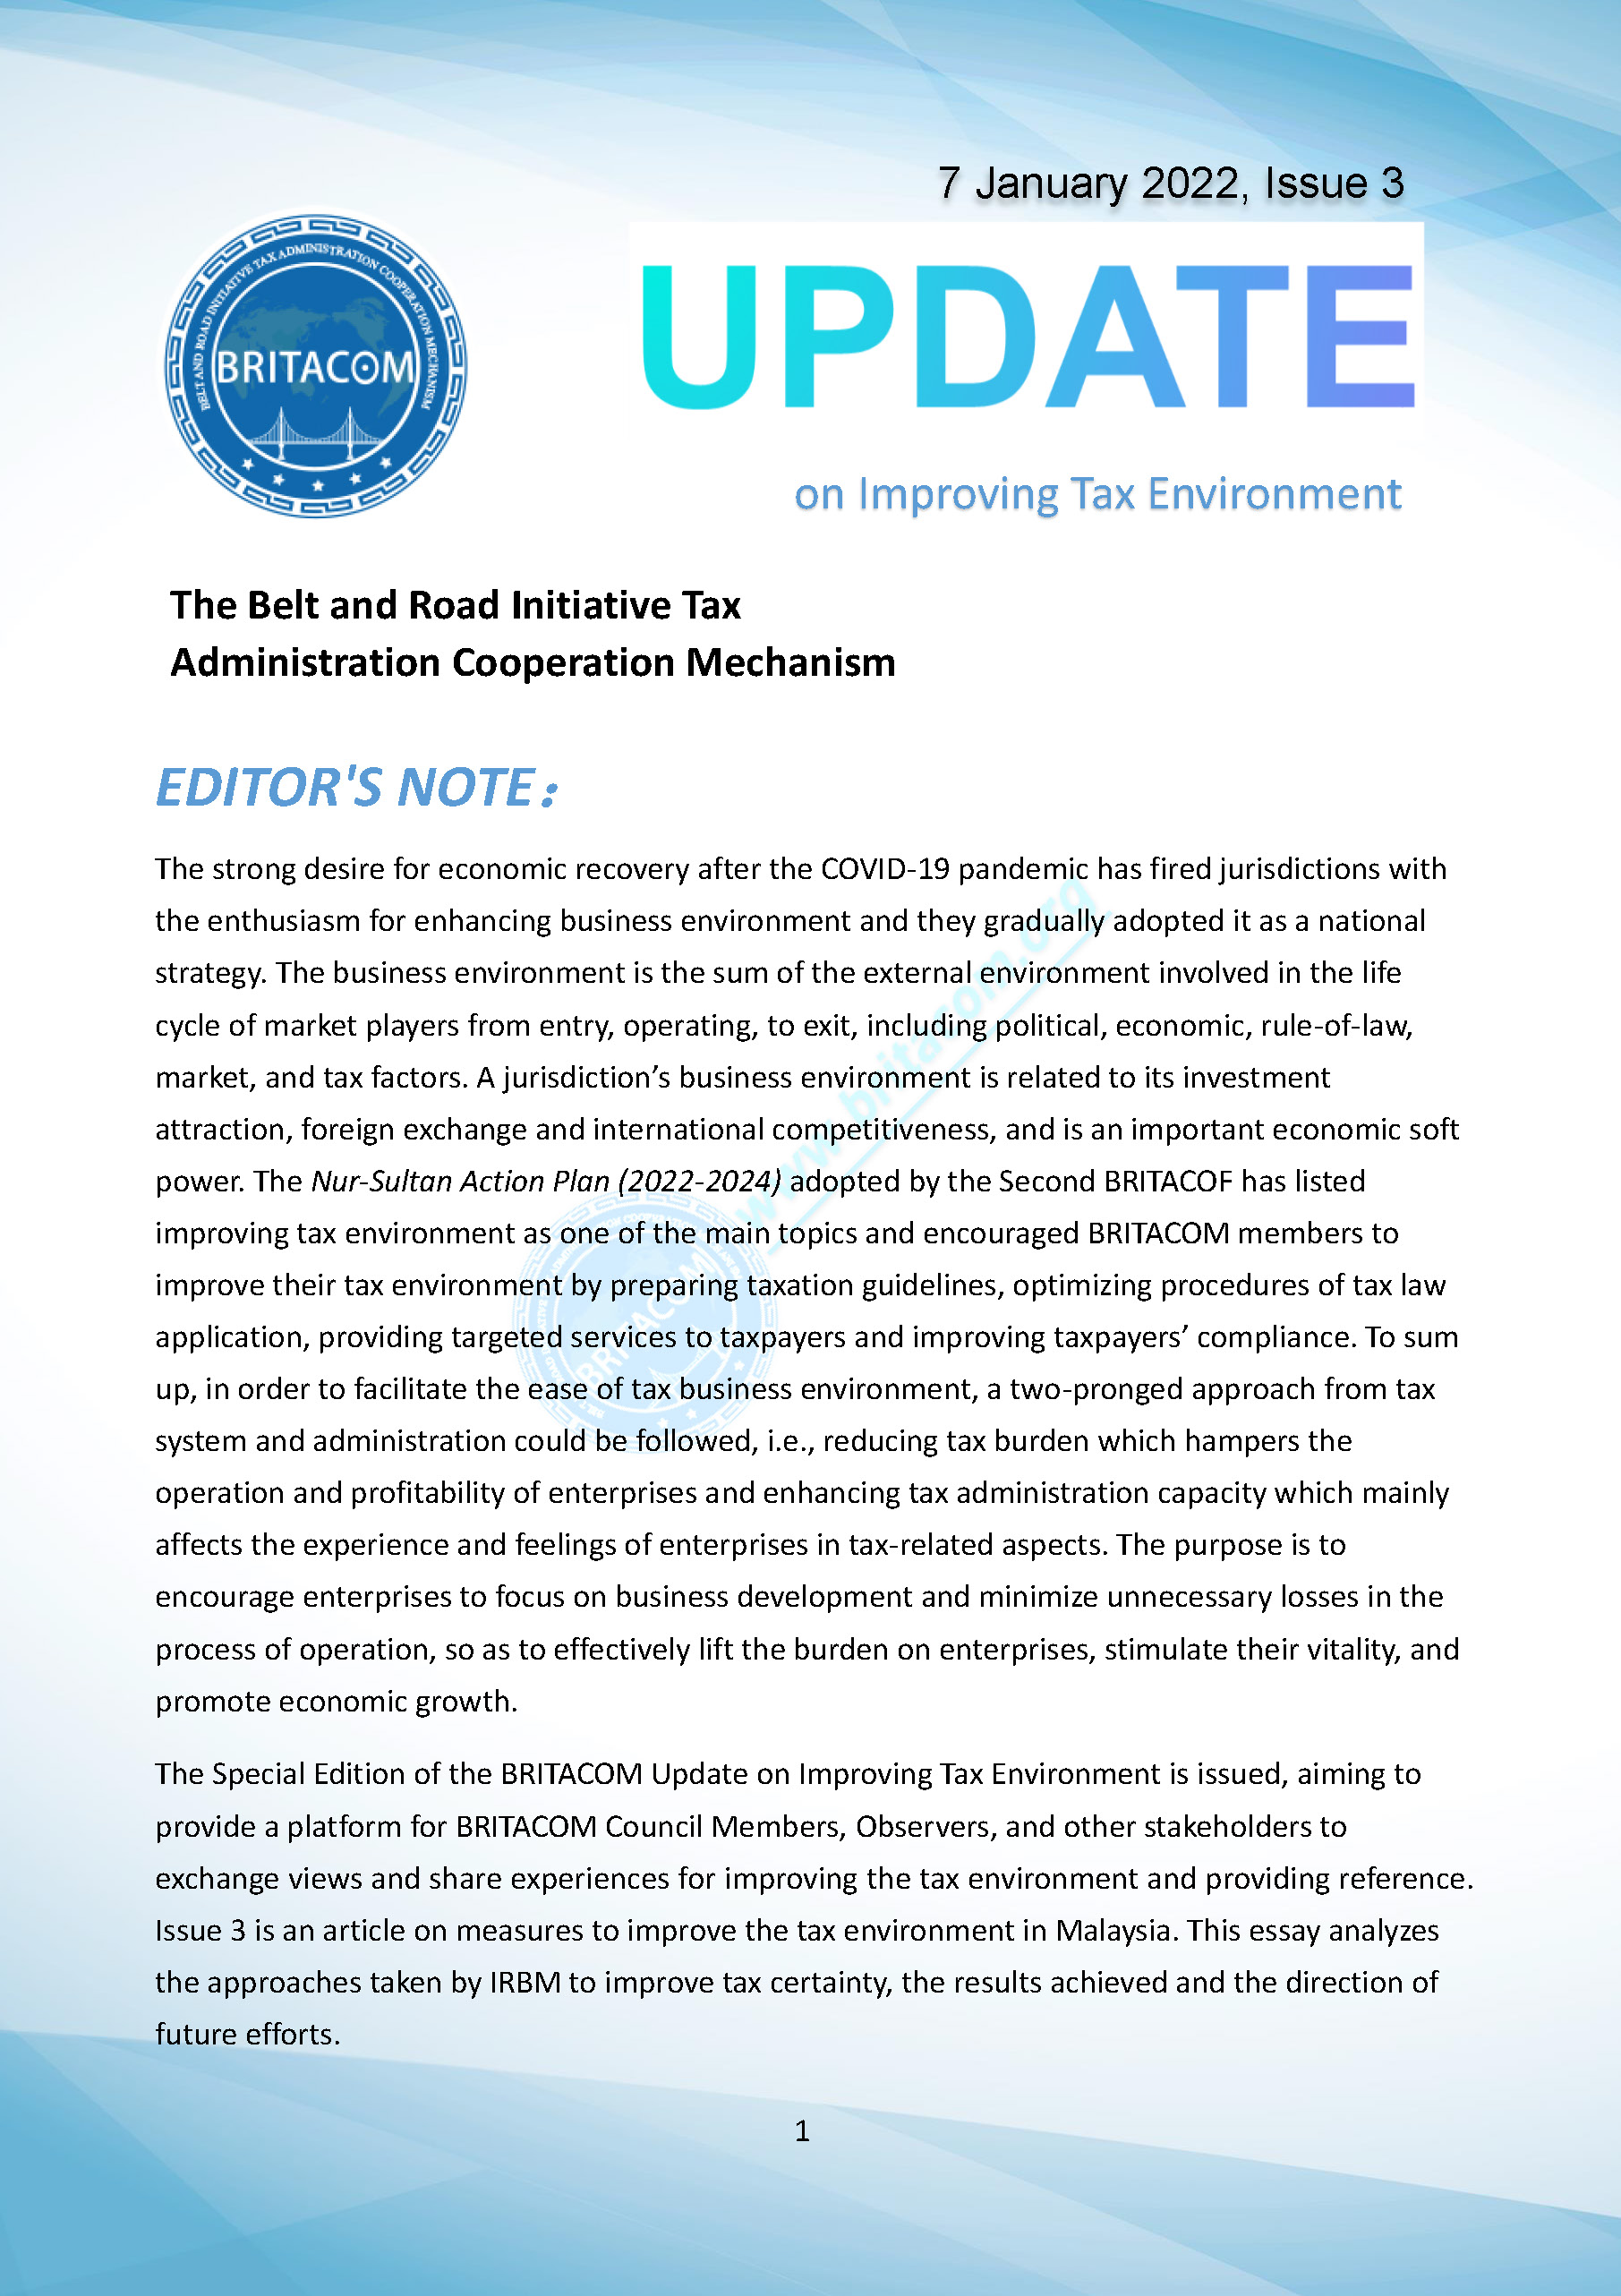 页面提取自－BRITACOM Update on Improving Tax  Environment_Issue 3.jpg